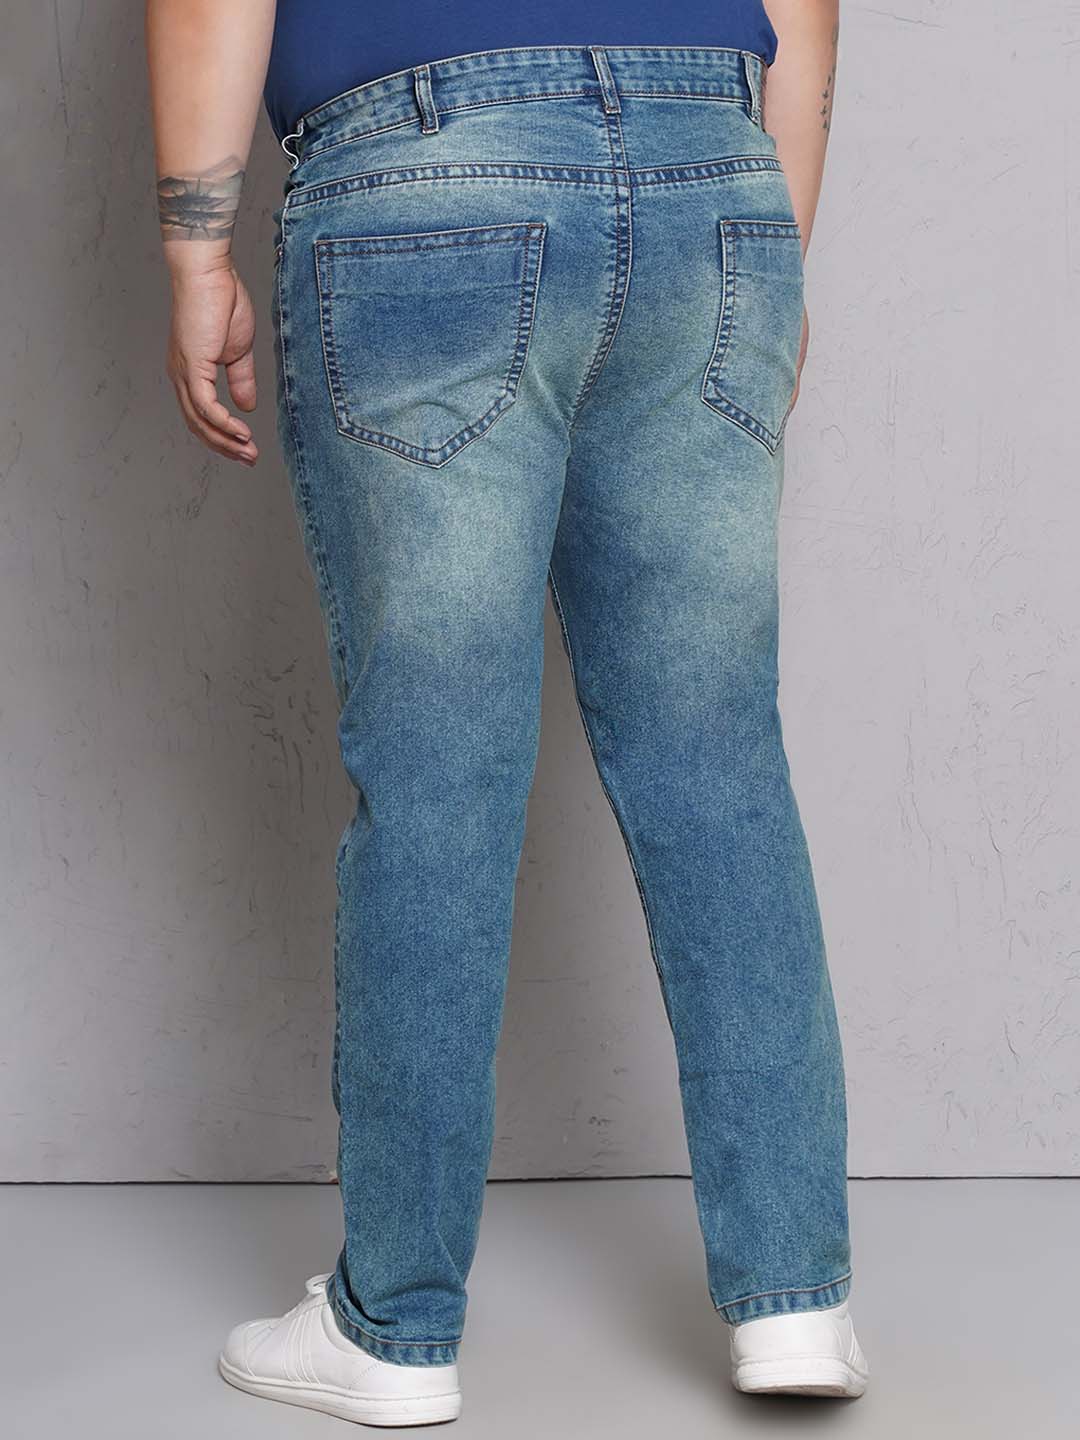 bottomwear/jeans/EJPJ25148/ejpj25148-5.jpg